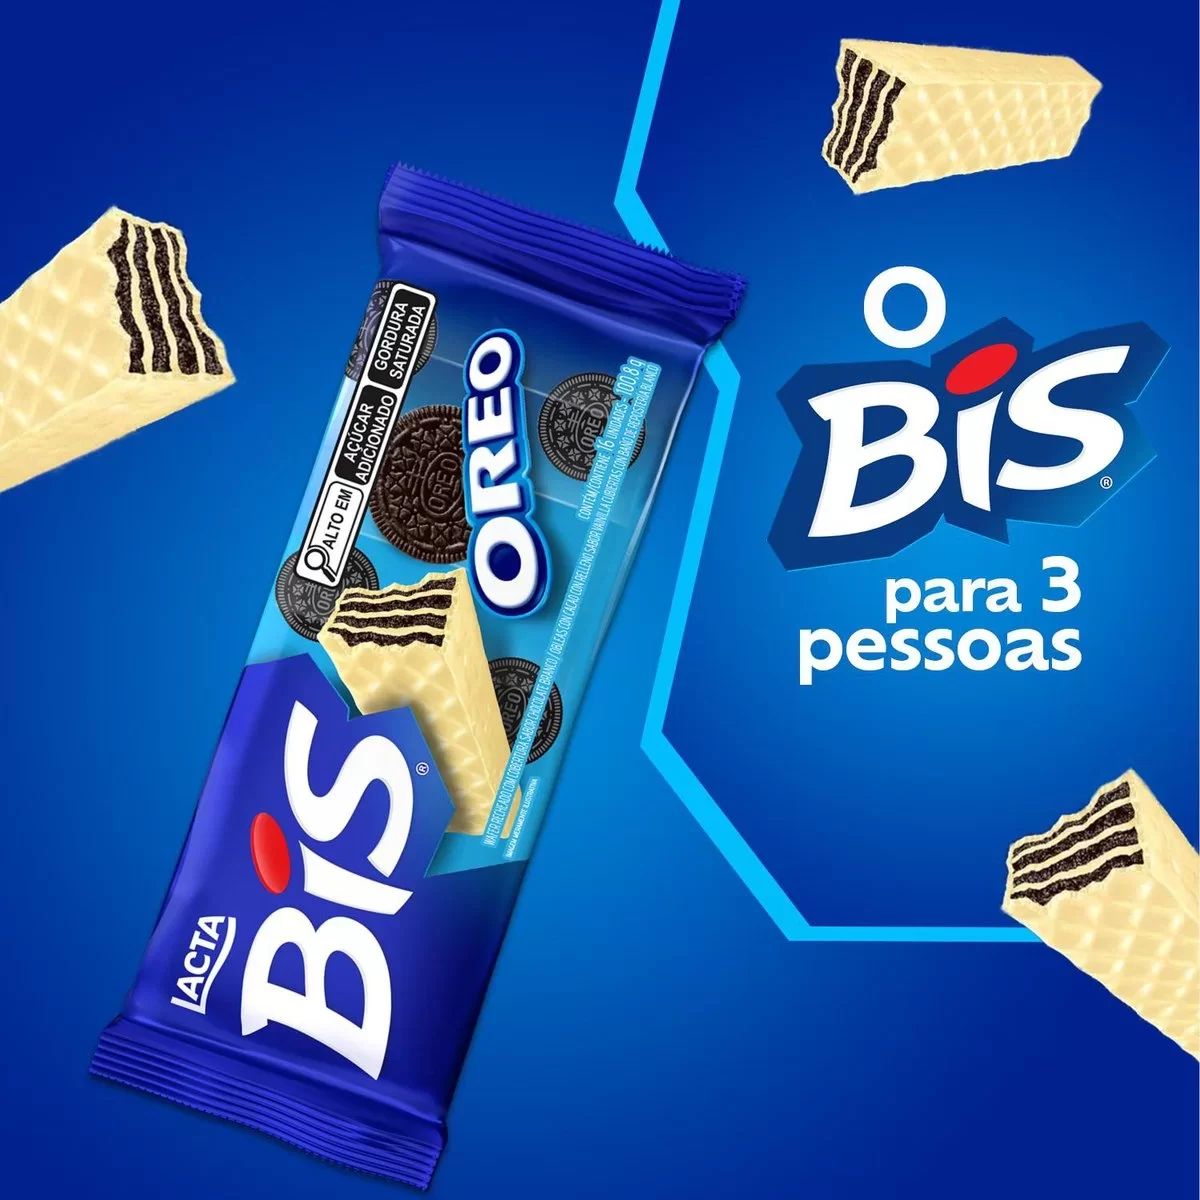 Bis Oreo Chocolate Lacta Pack com 16 unidades - 100,8g